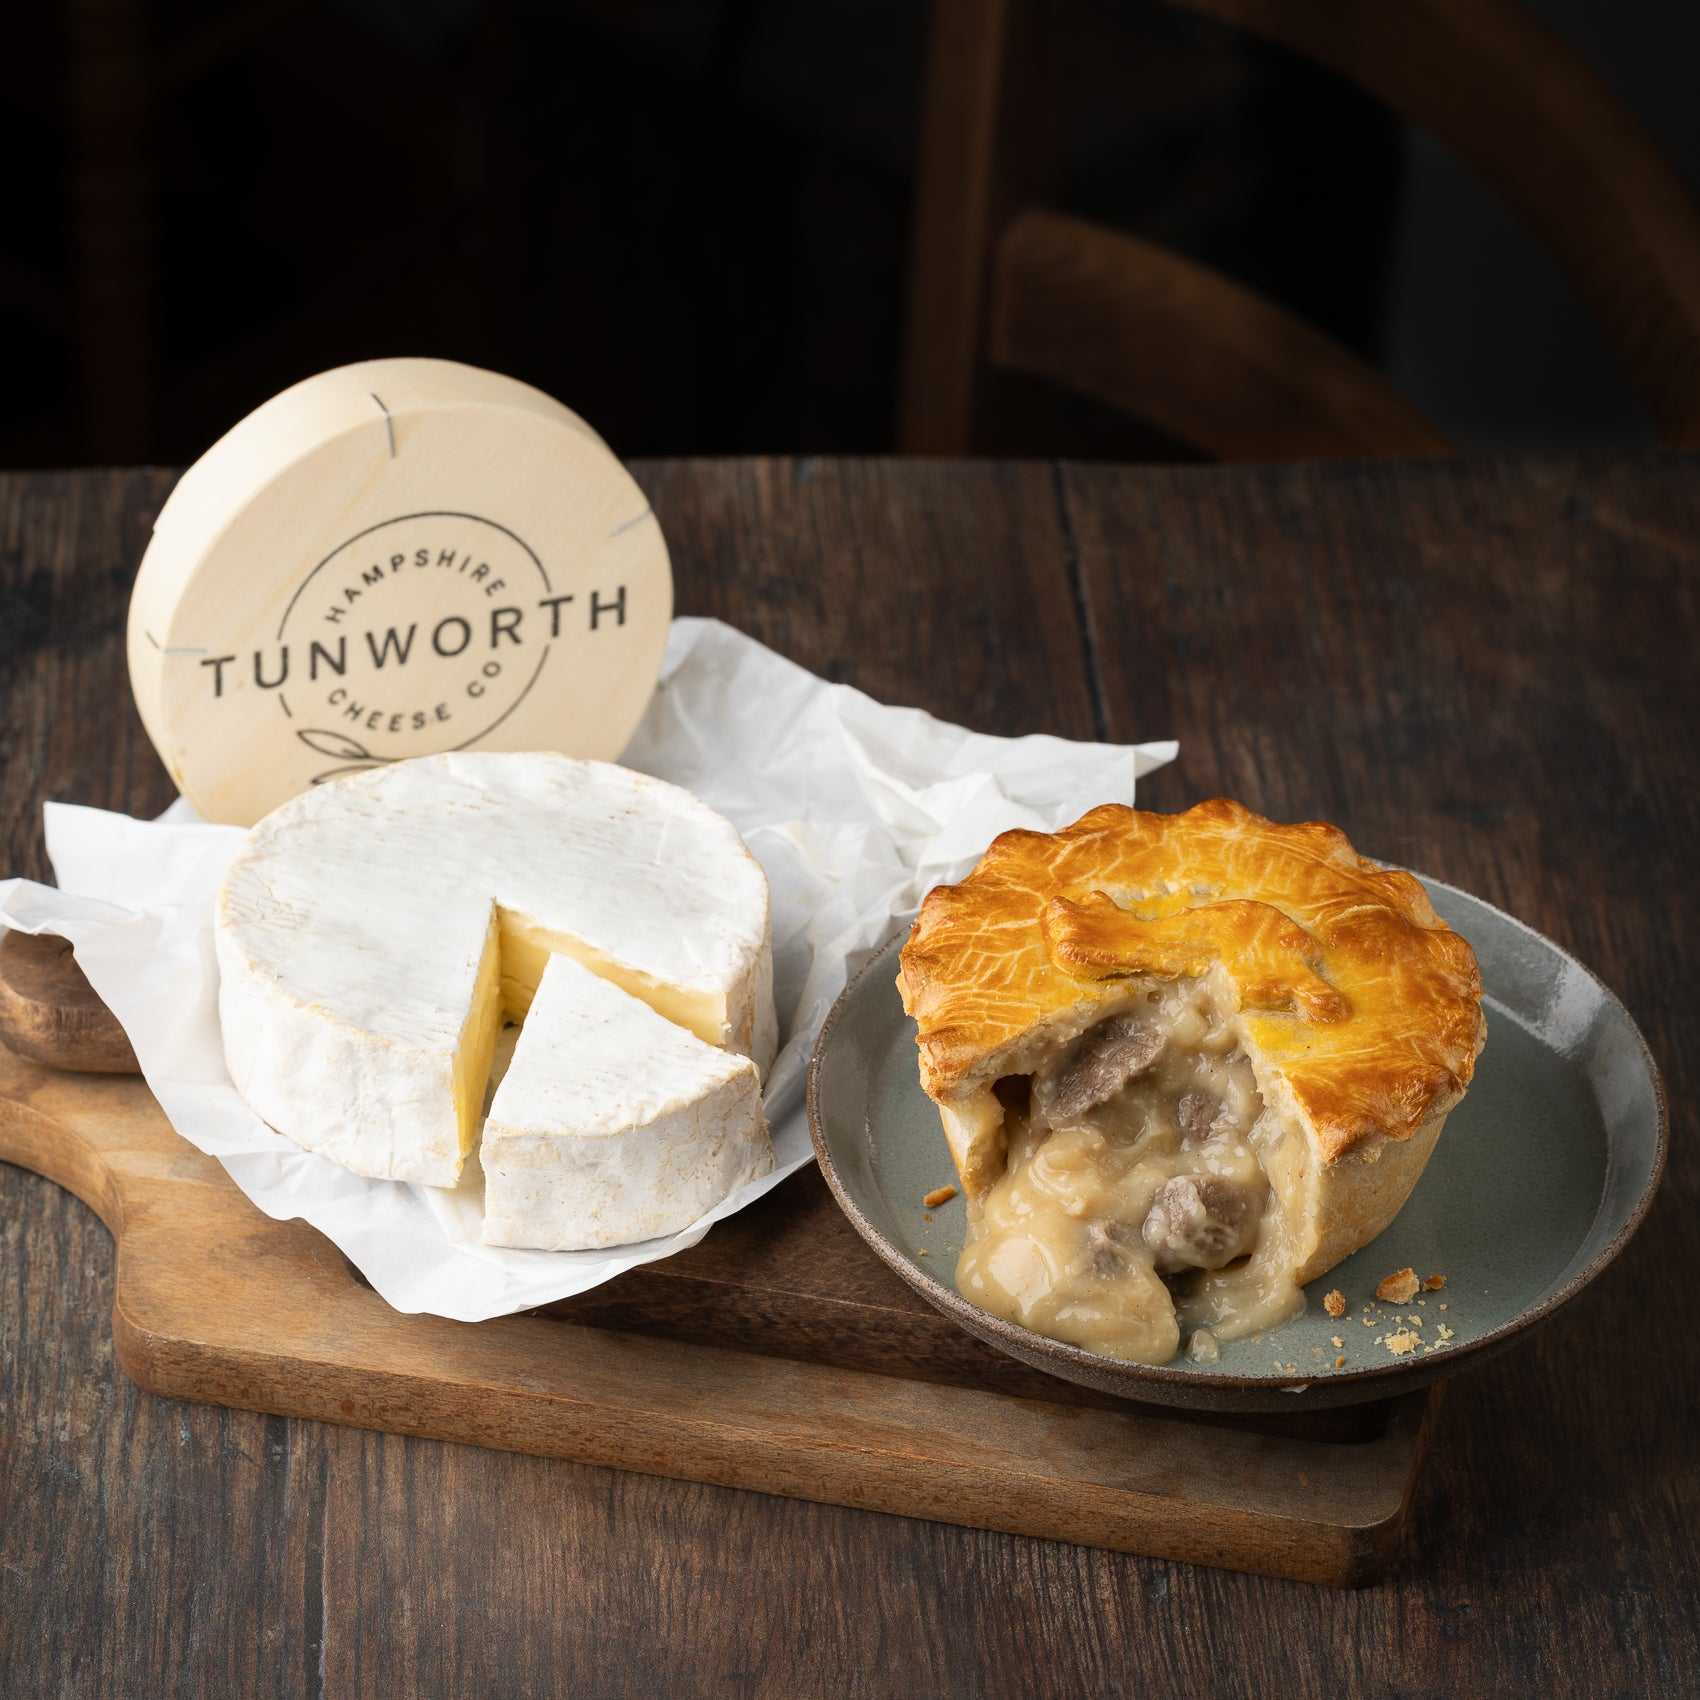 Steak and Tunworth Cheese Pie (270g)